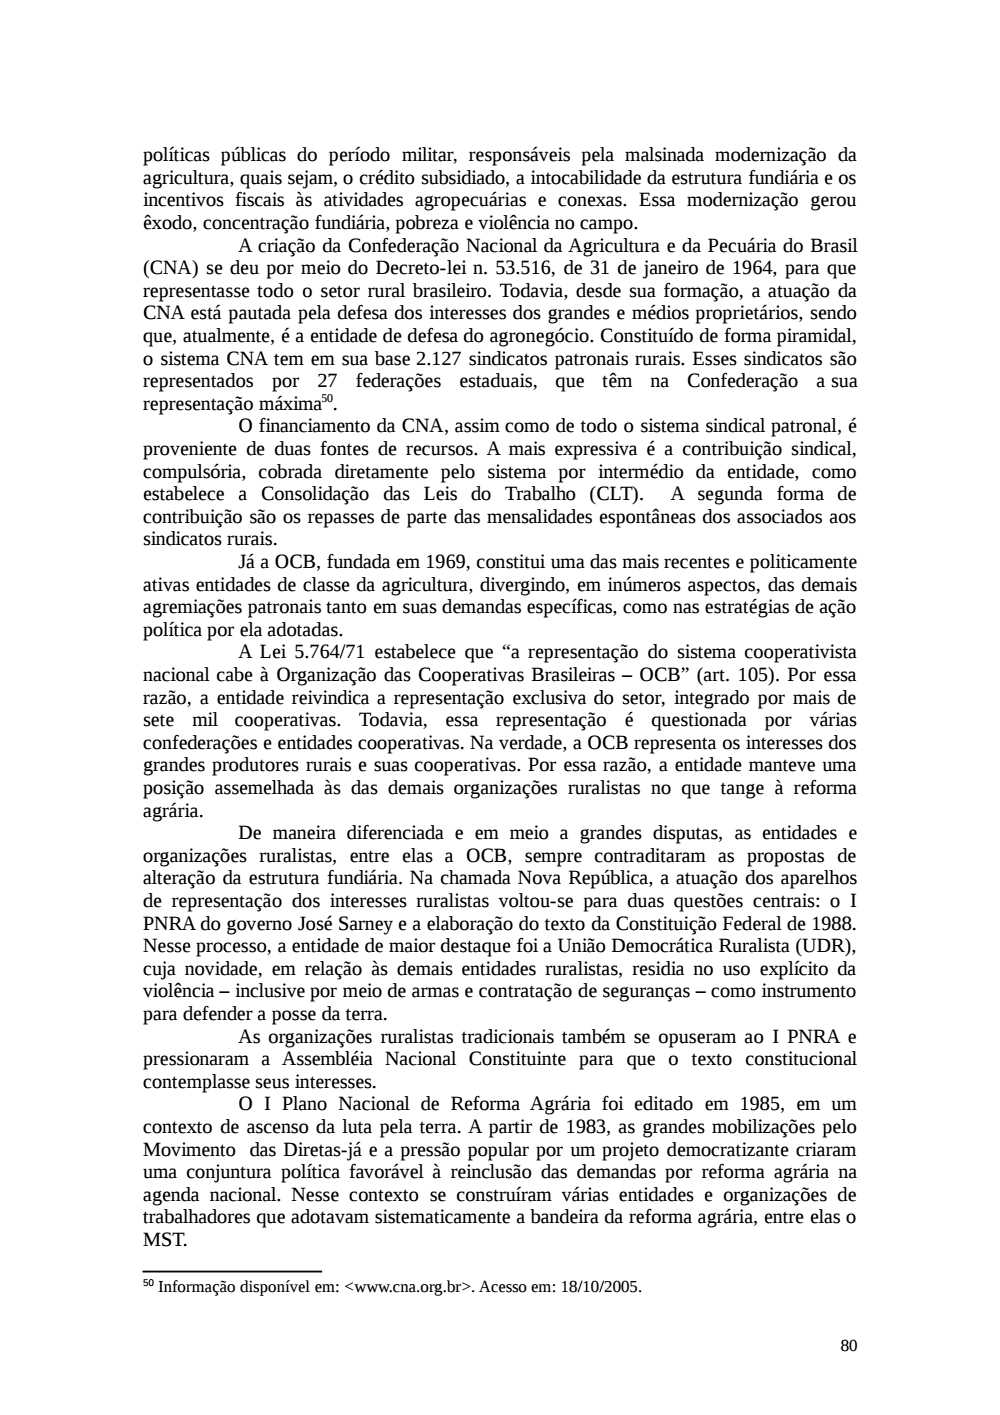 Page 80 from Relatório final da comissão